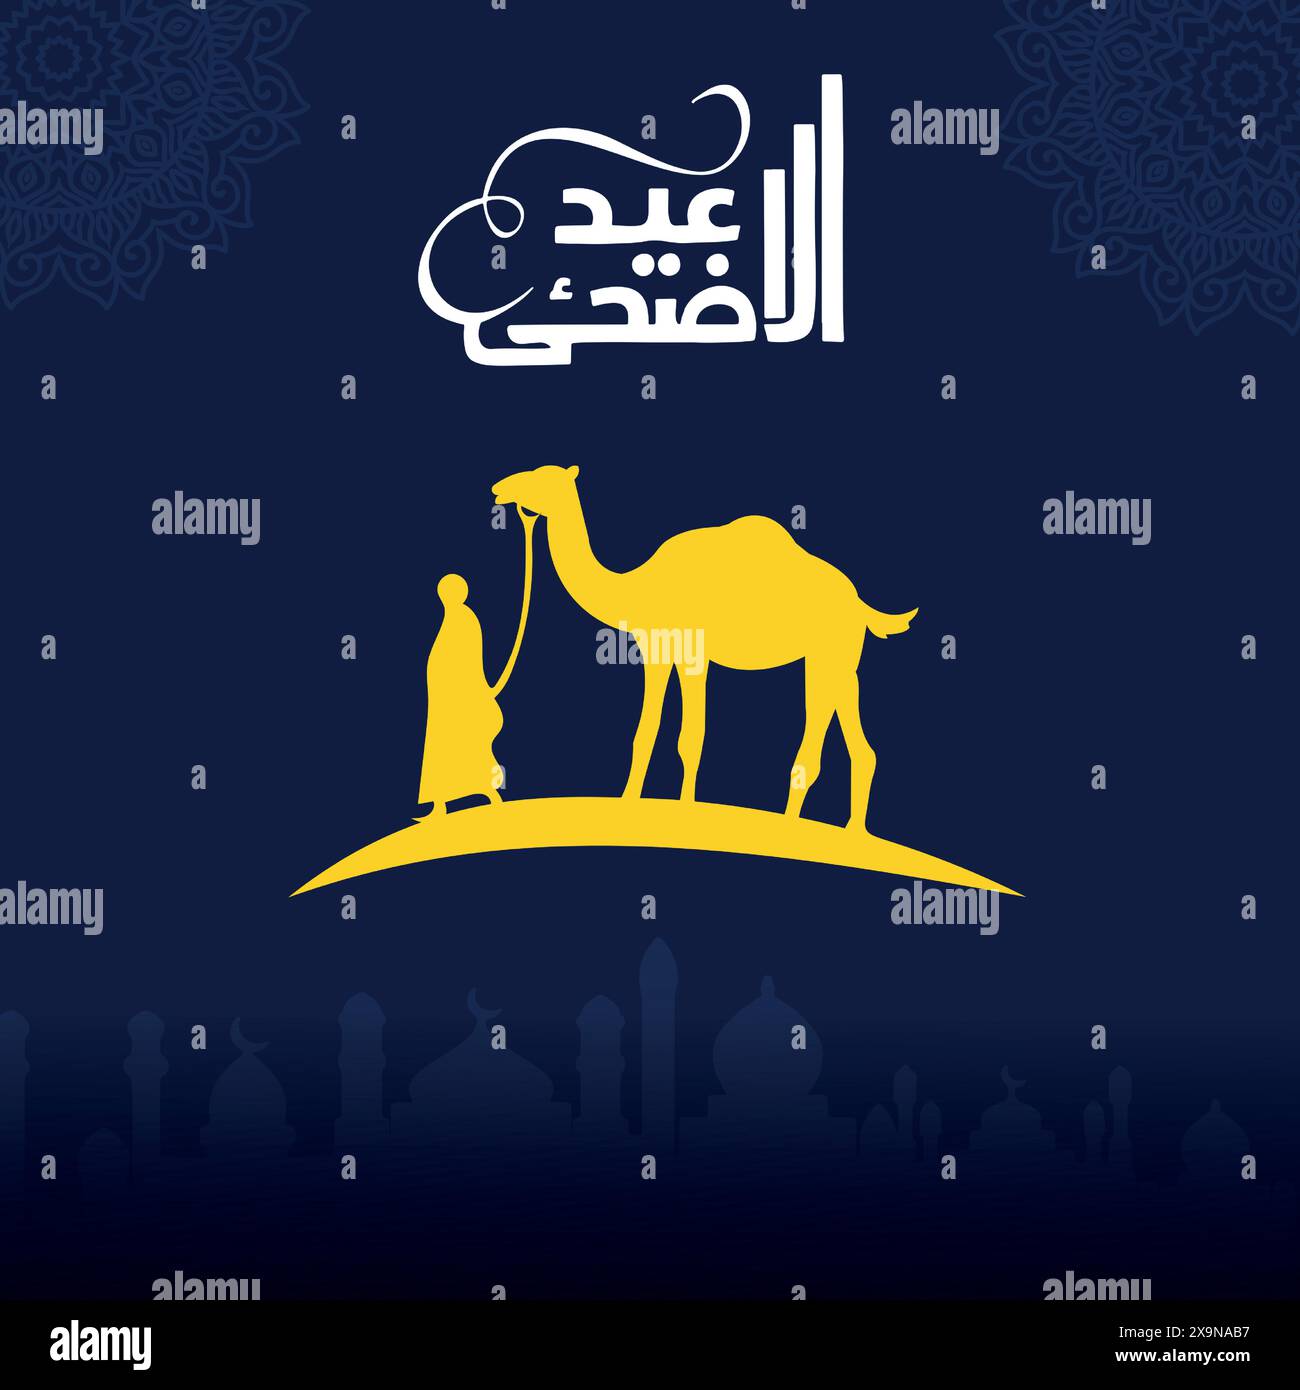 Eid ul adha mubarak, conception de carte de voeux vectorielle avec calligéraphie arabe, traduction ''sacrifice festival'' Illustration de Vecteur